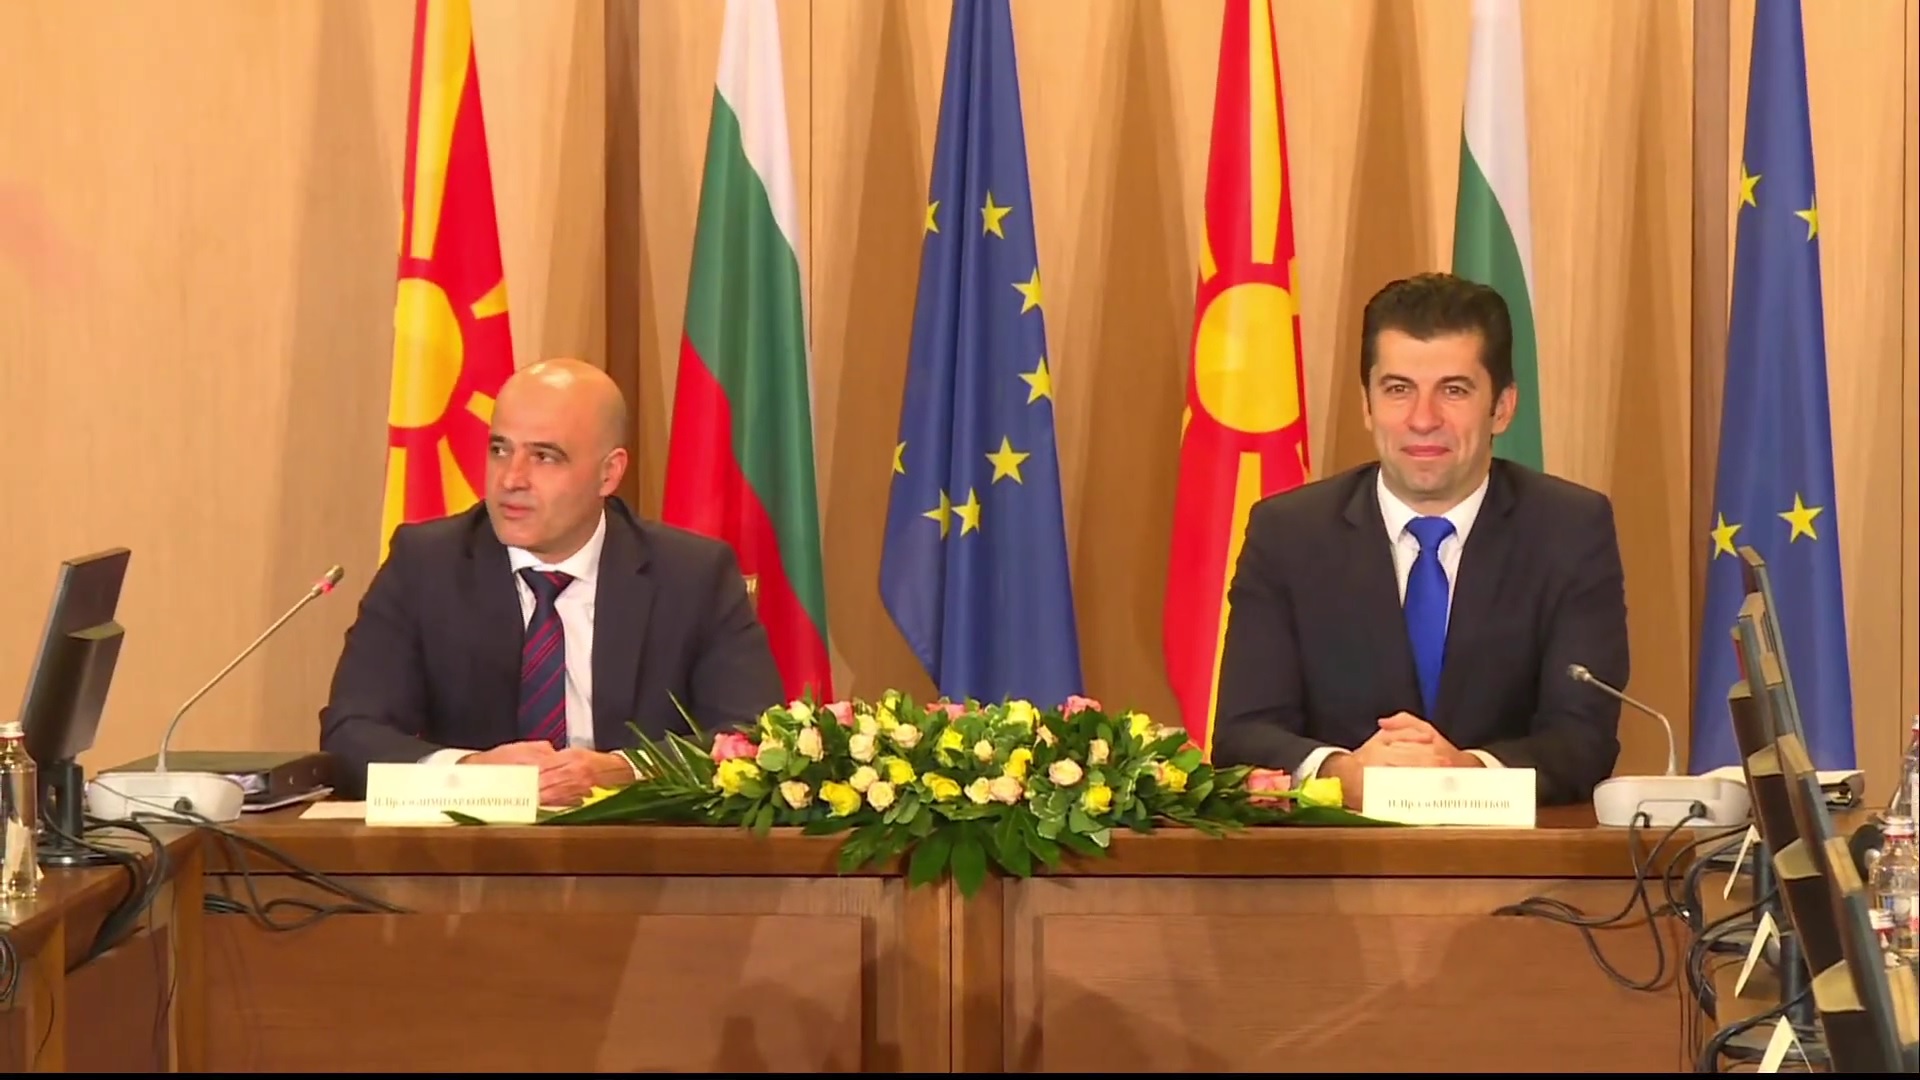 K. Makedonya ile Bulgaristan hükümetler arası toplantı düzenledi